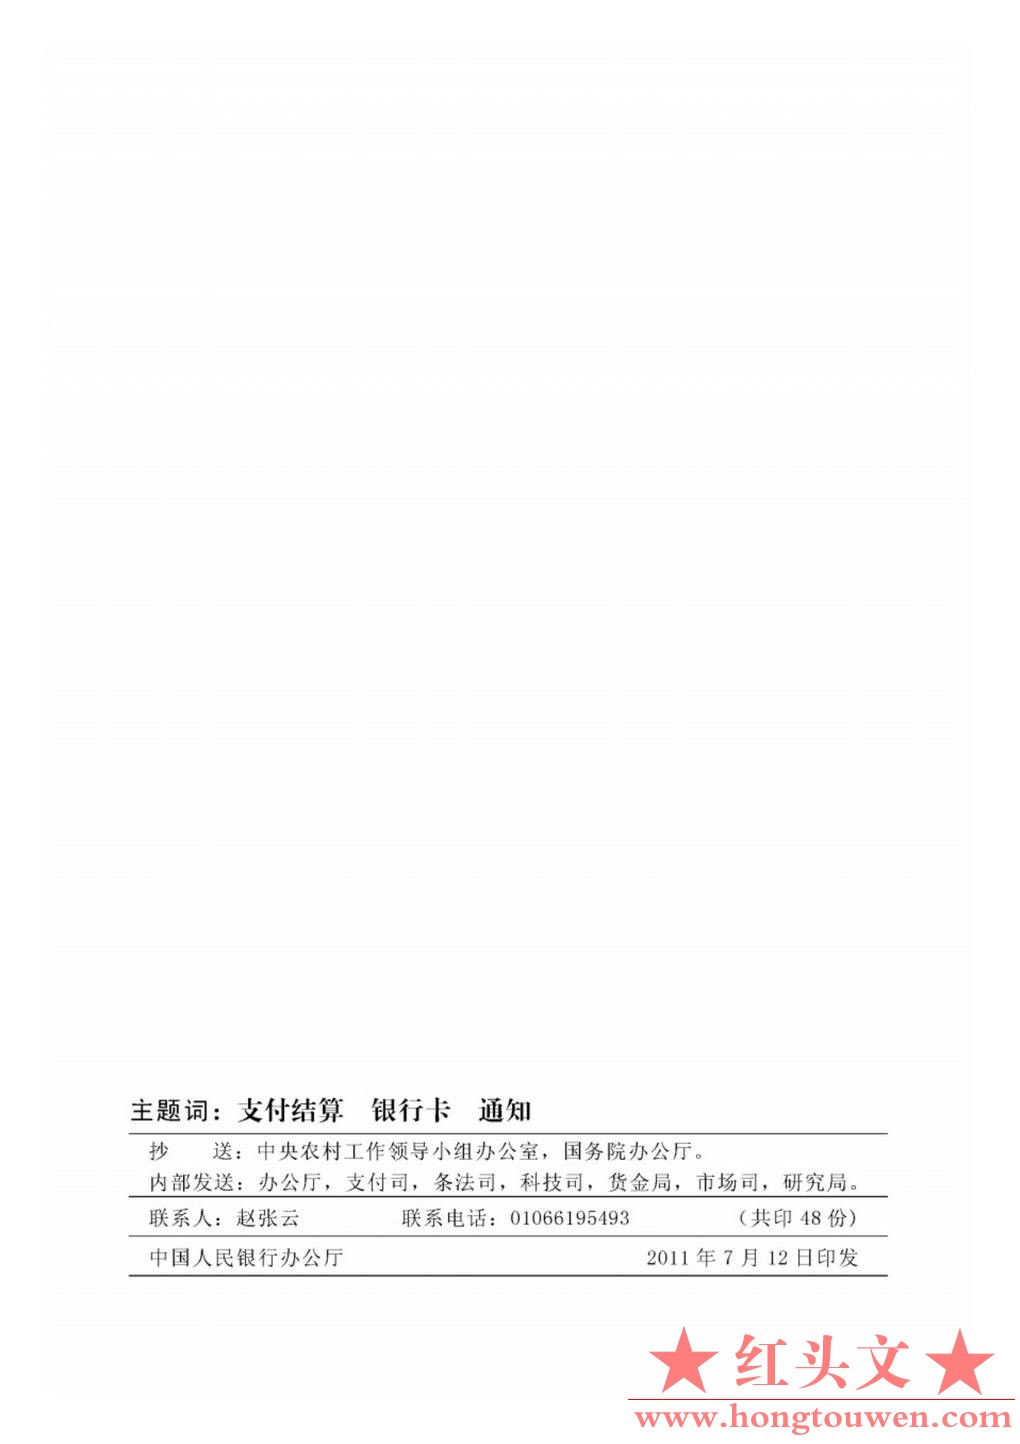 银发[2011]177号-中国人民银行关于推广银行卡助农取款服务的通知_Page8.jpg.jpg